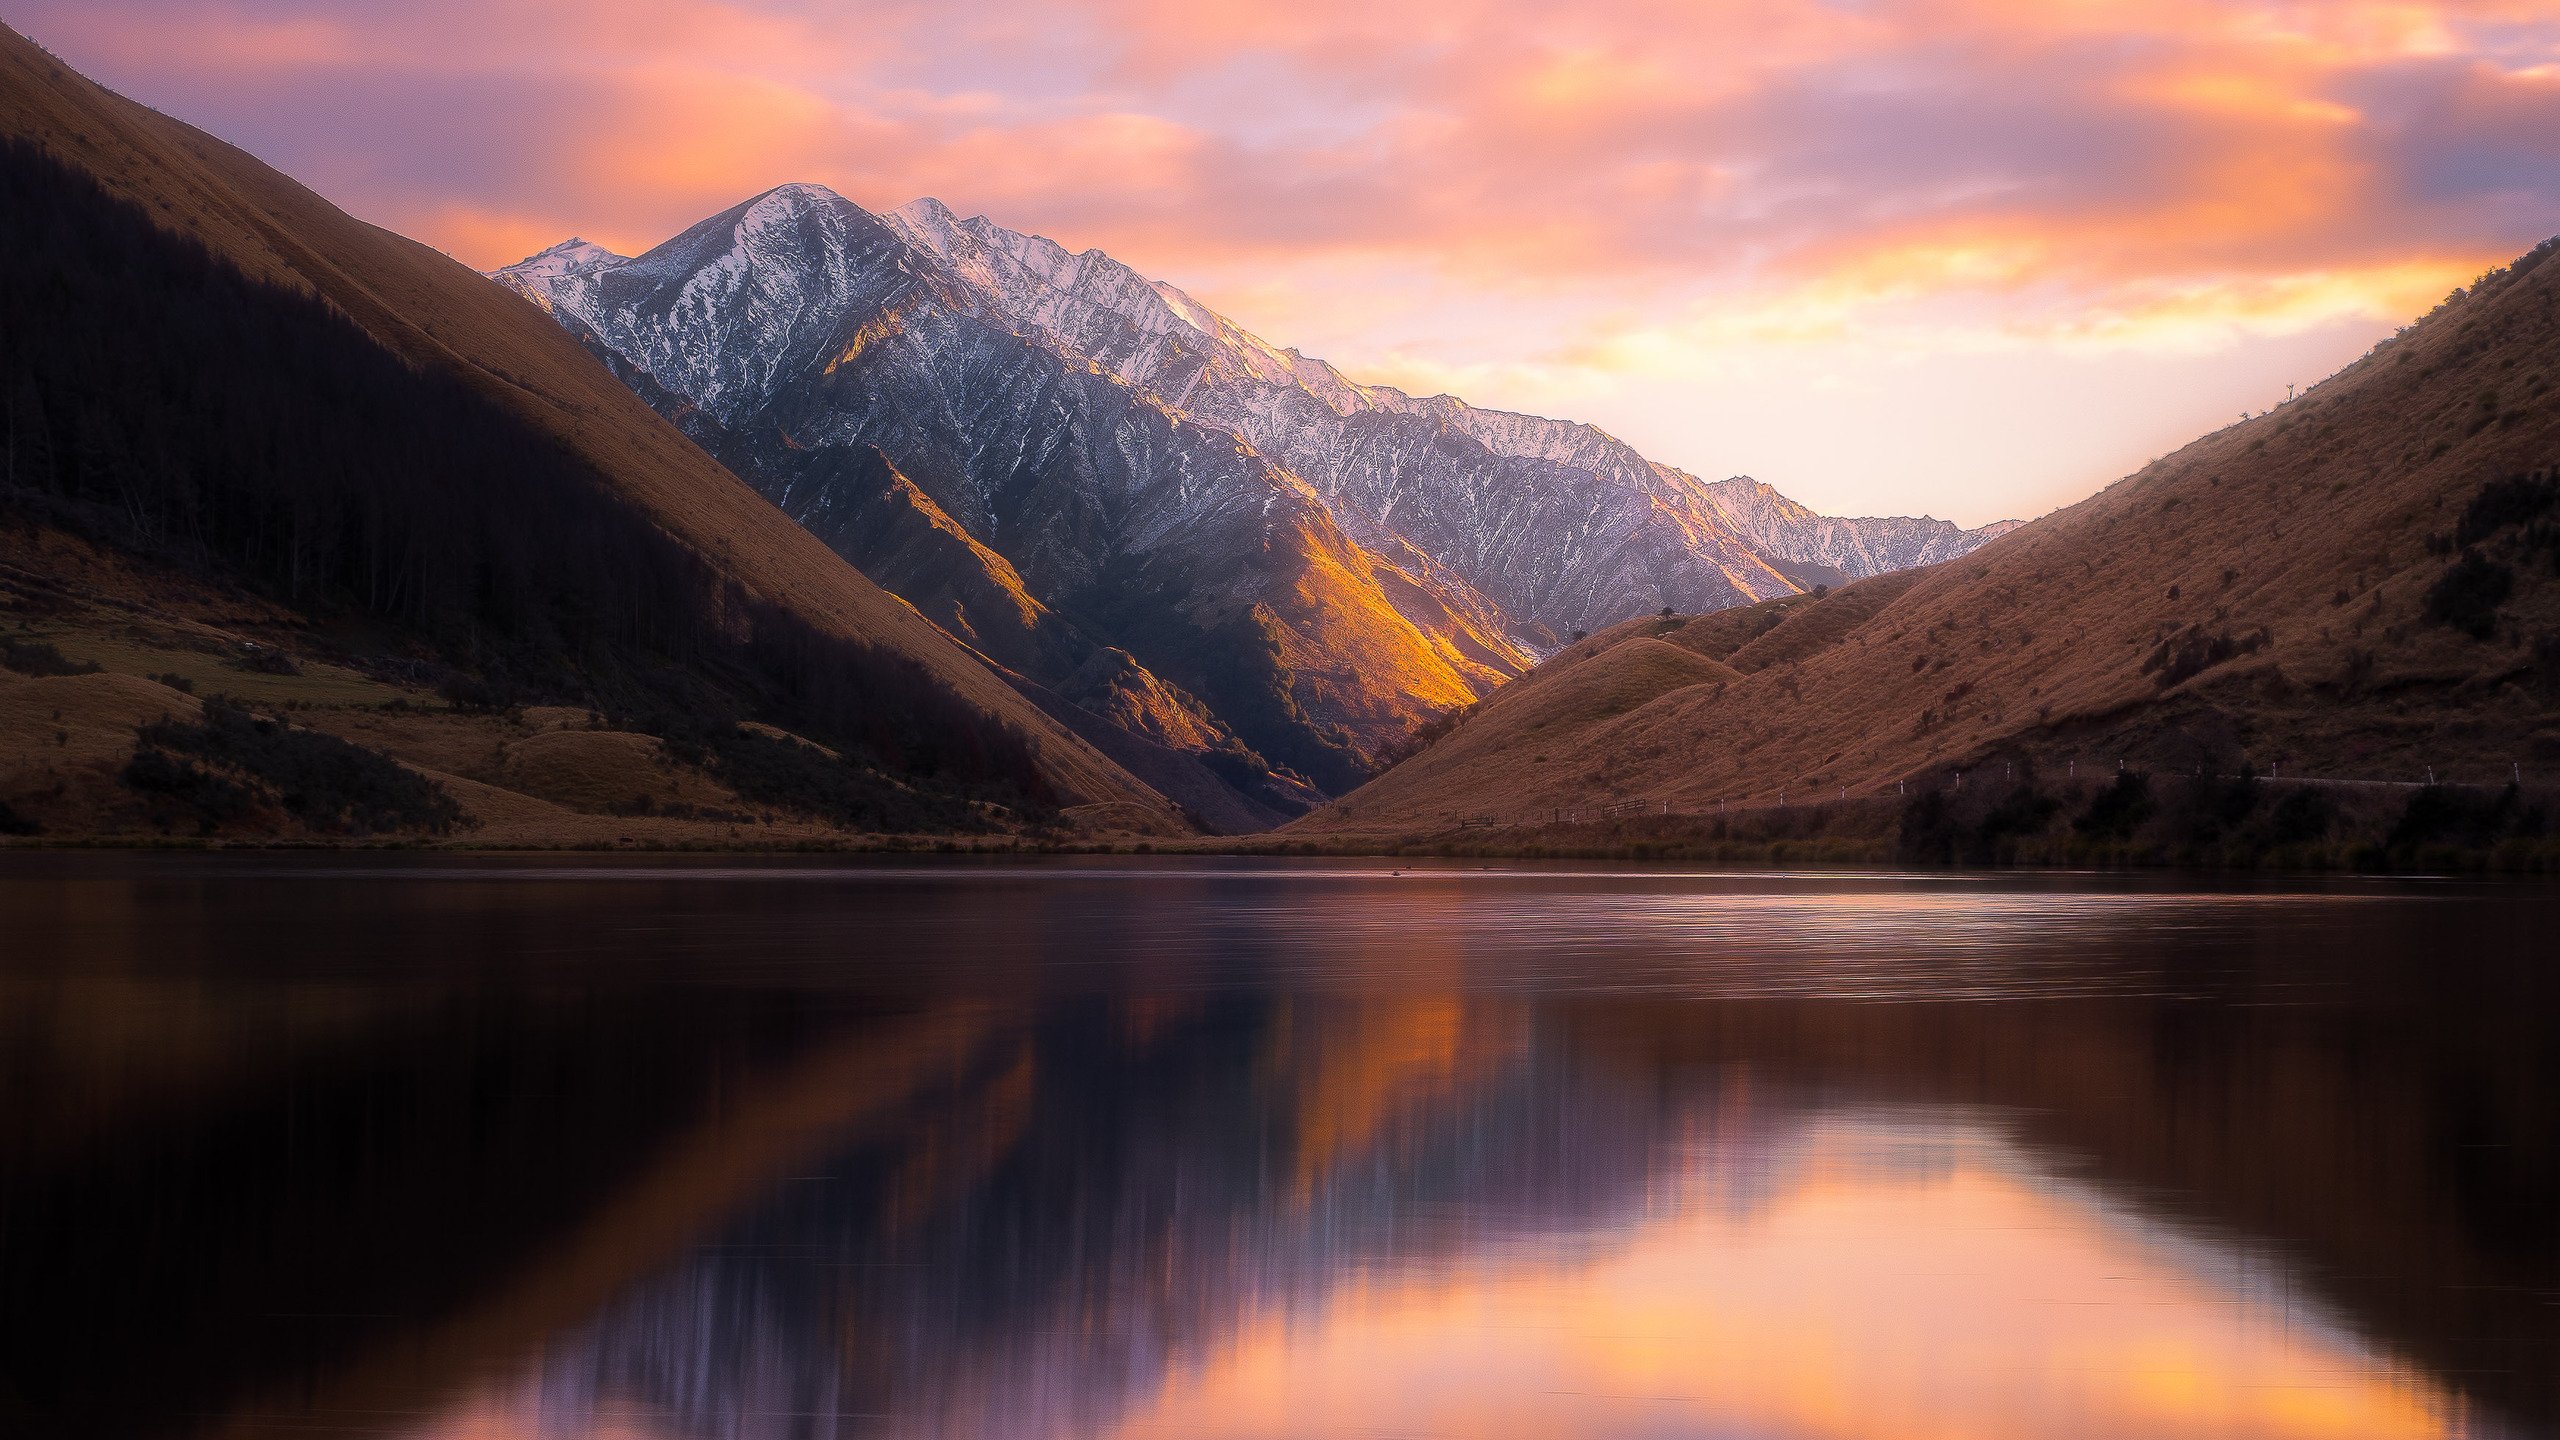 lake Kirkpatrick, New Zealand, Mountains, Lake, Sunset, Nature, Landscape Wallpaper